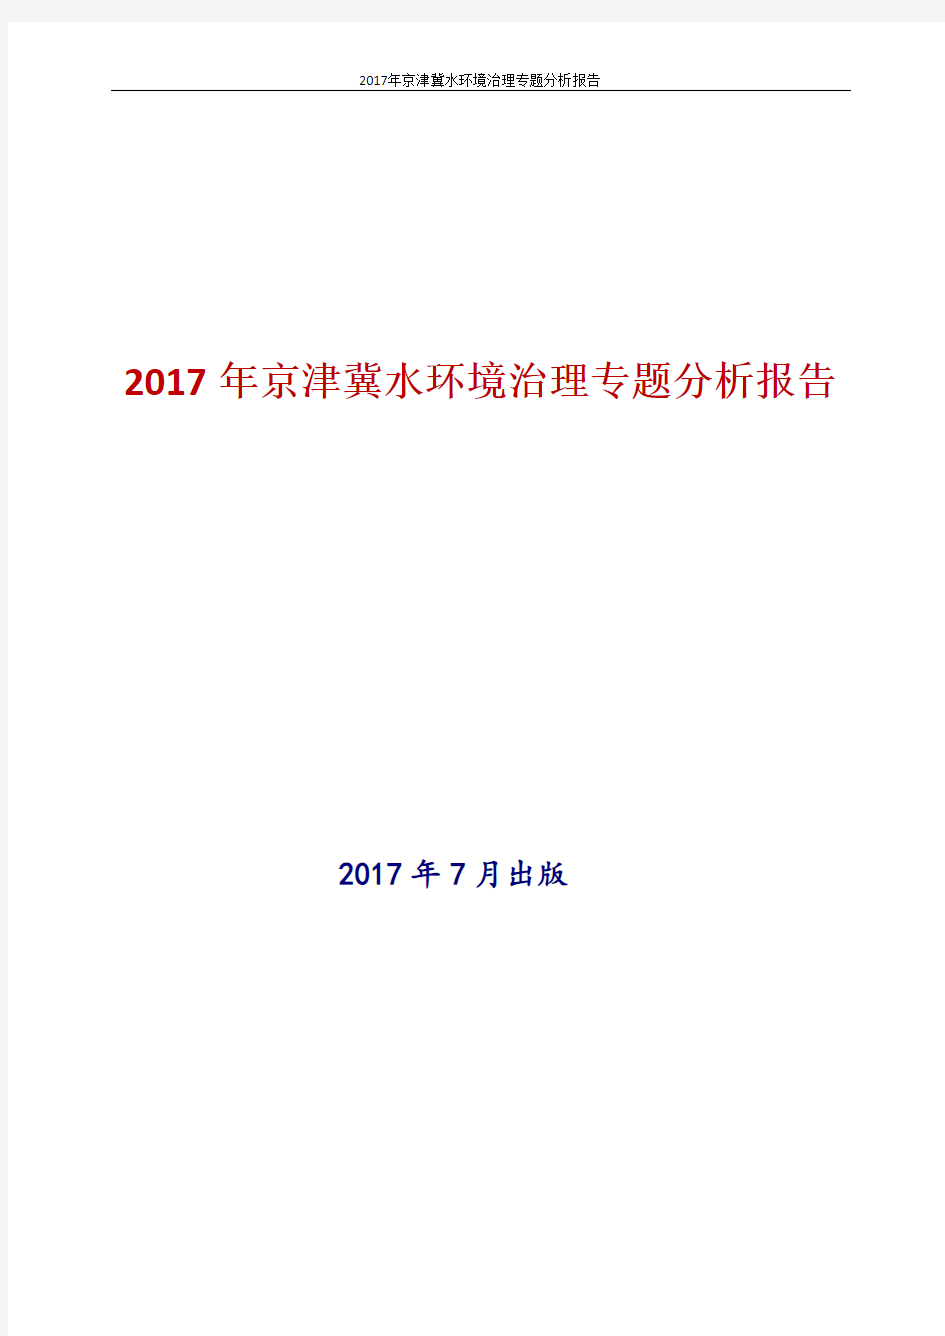 2017年京津冀水环境治理专题分析报告